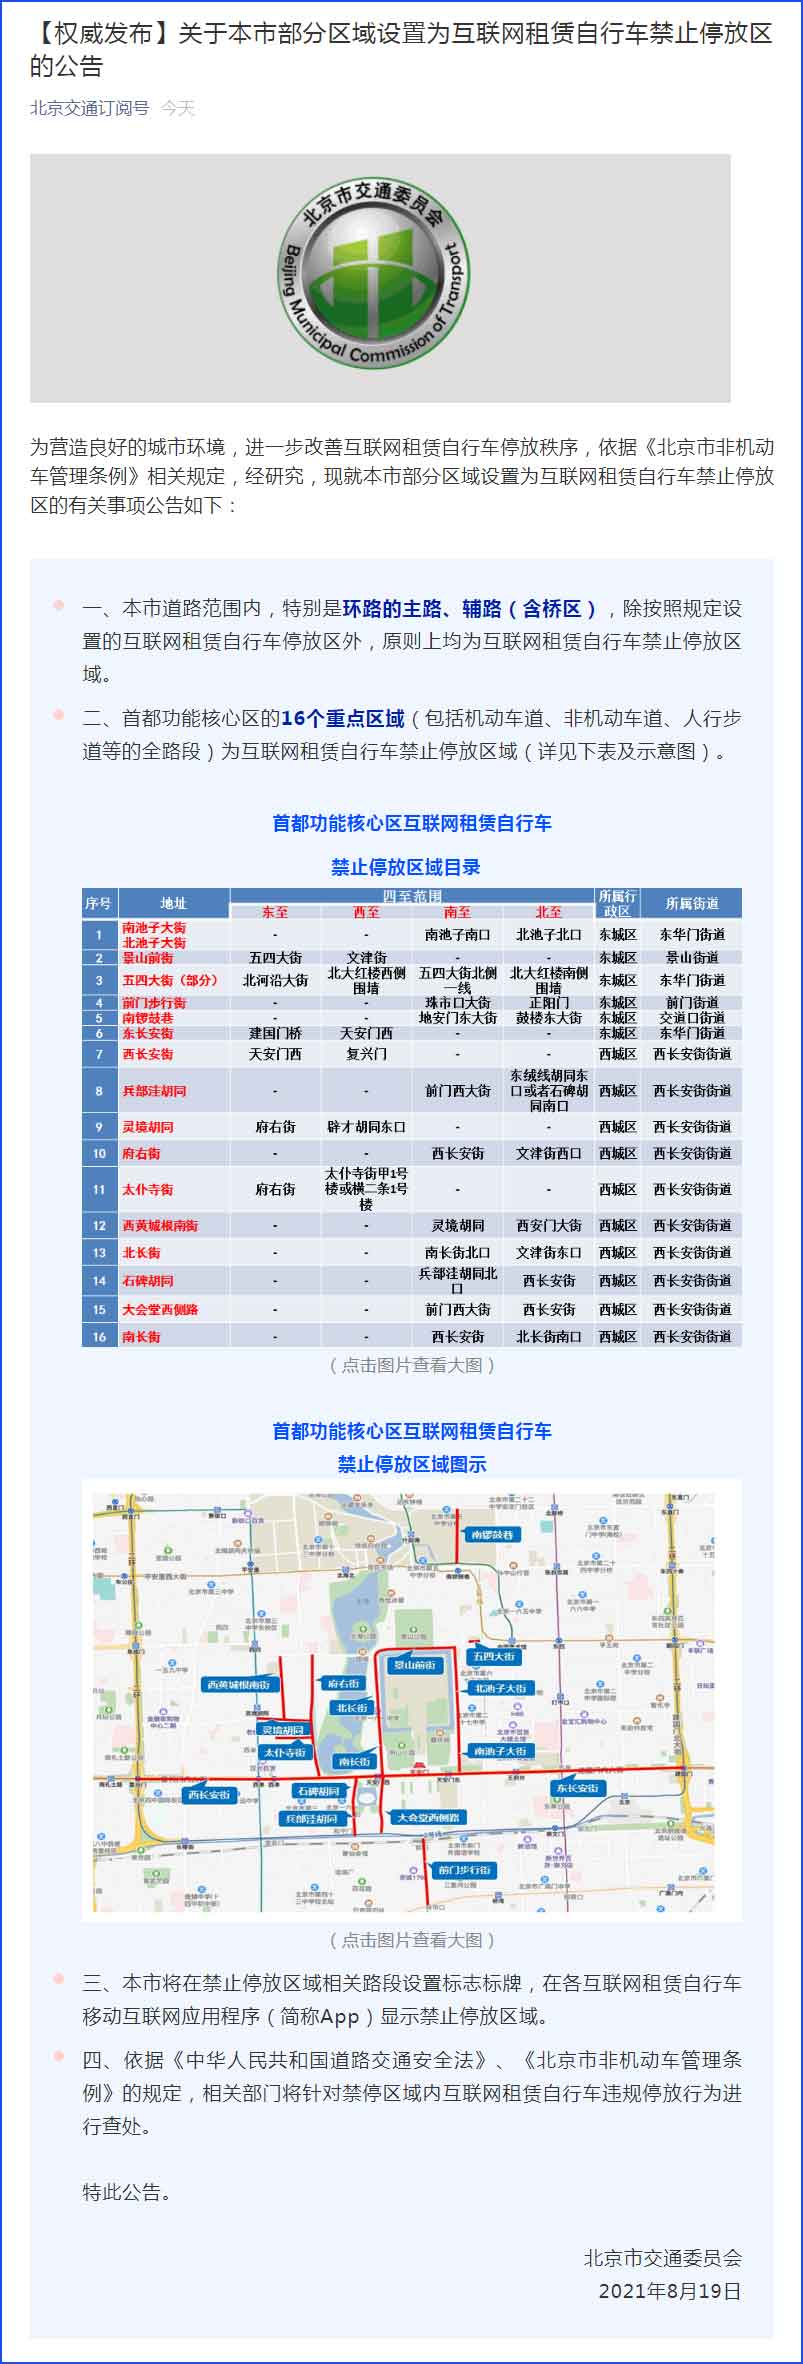 北京为营造良好的城市环境 部分区域禁止互联网租赁自行车停放